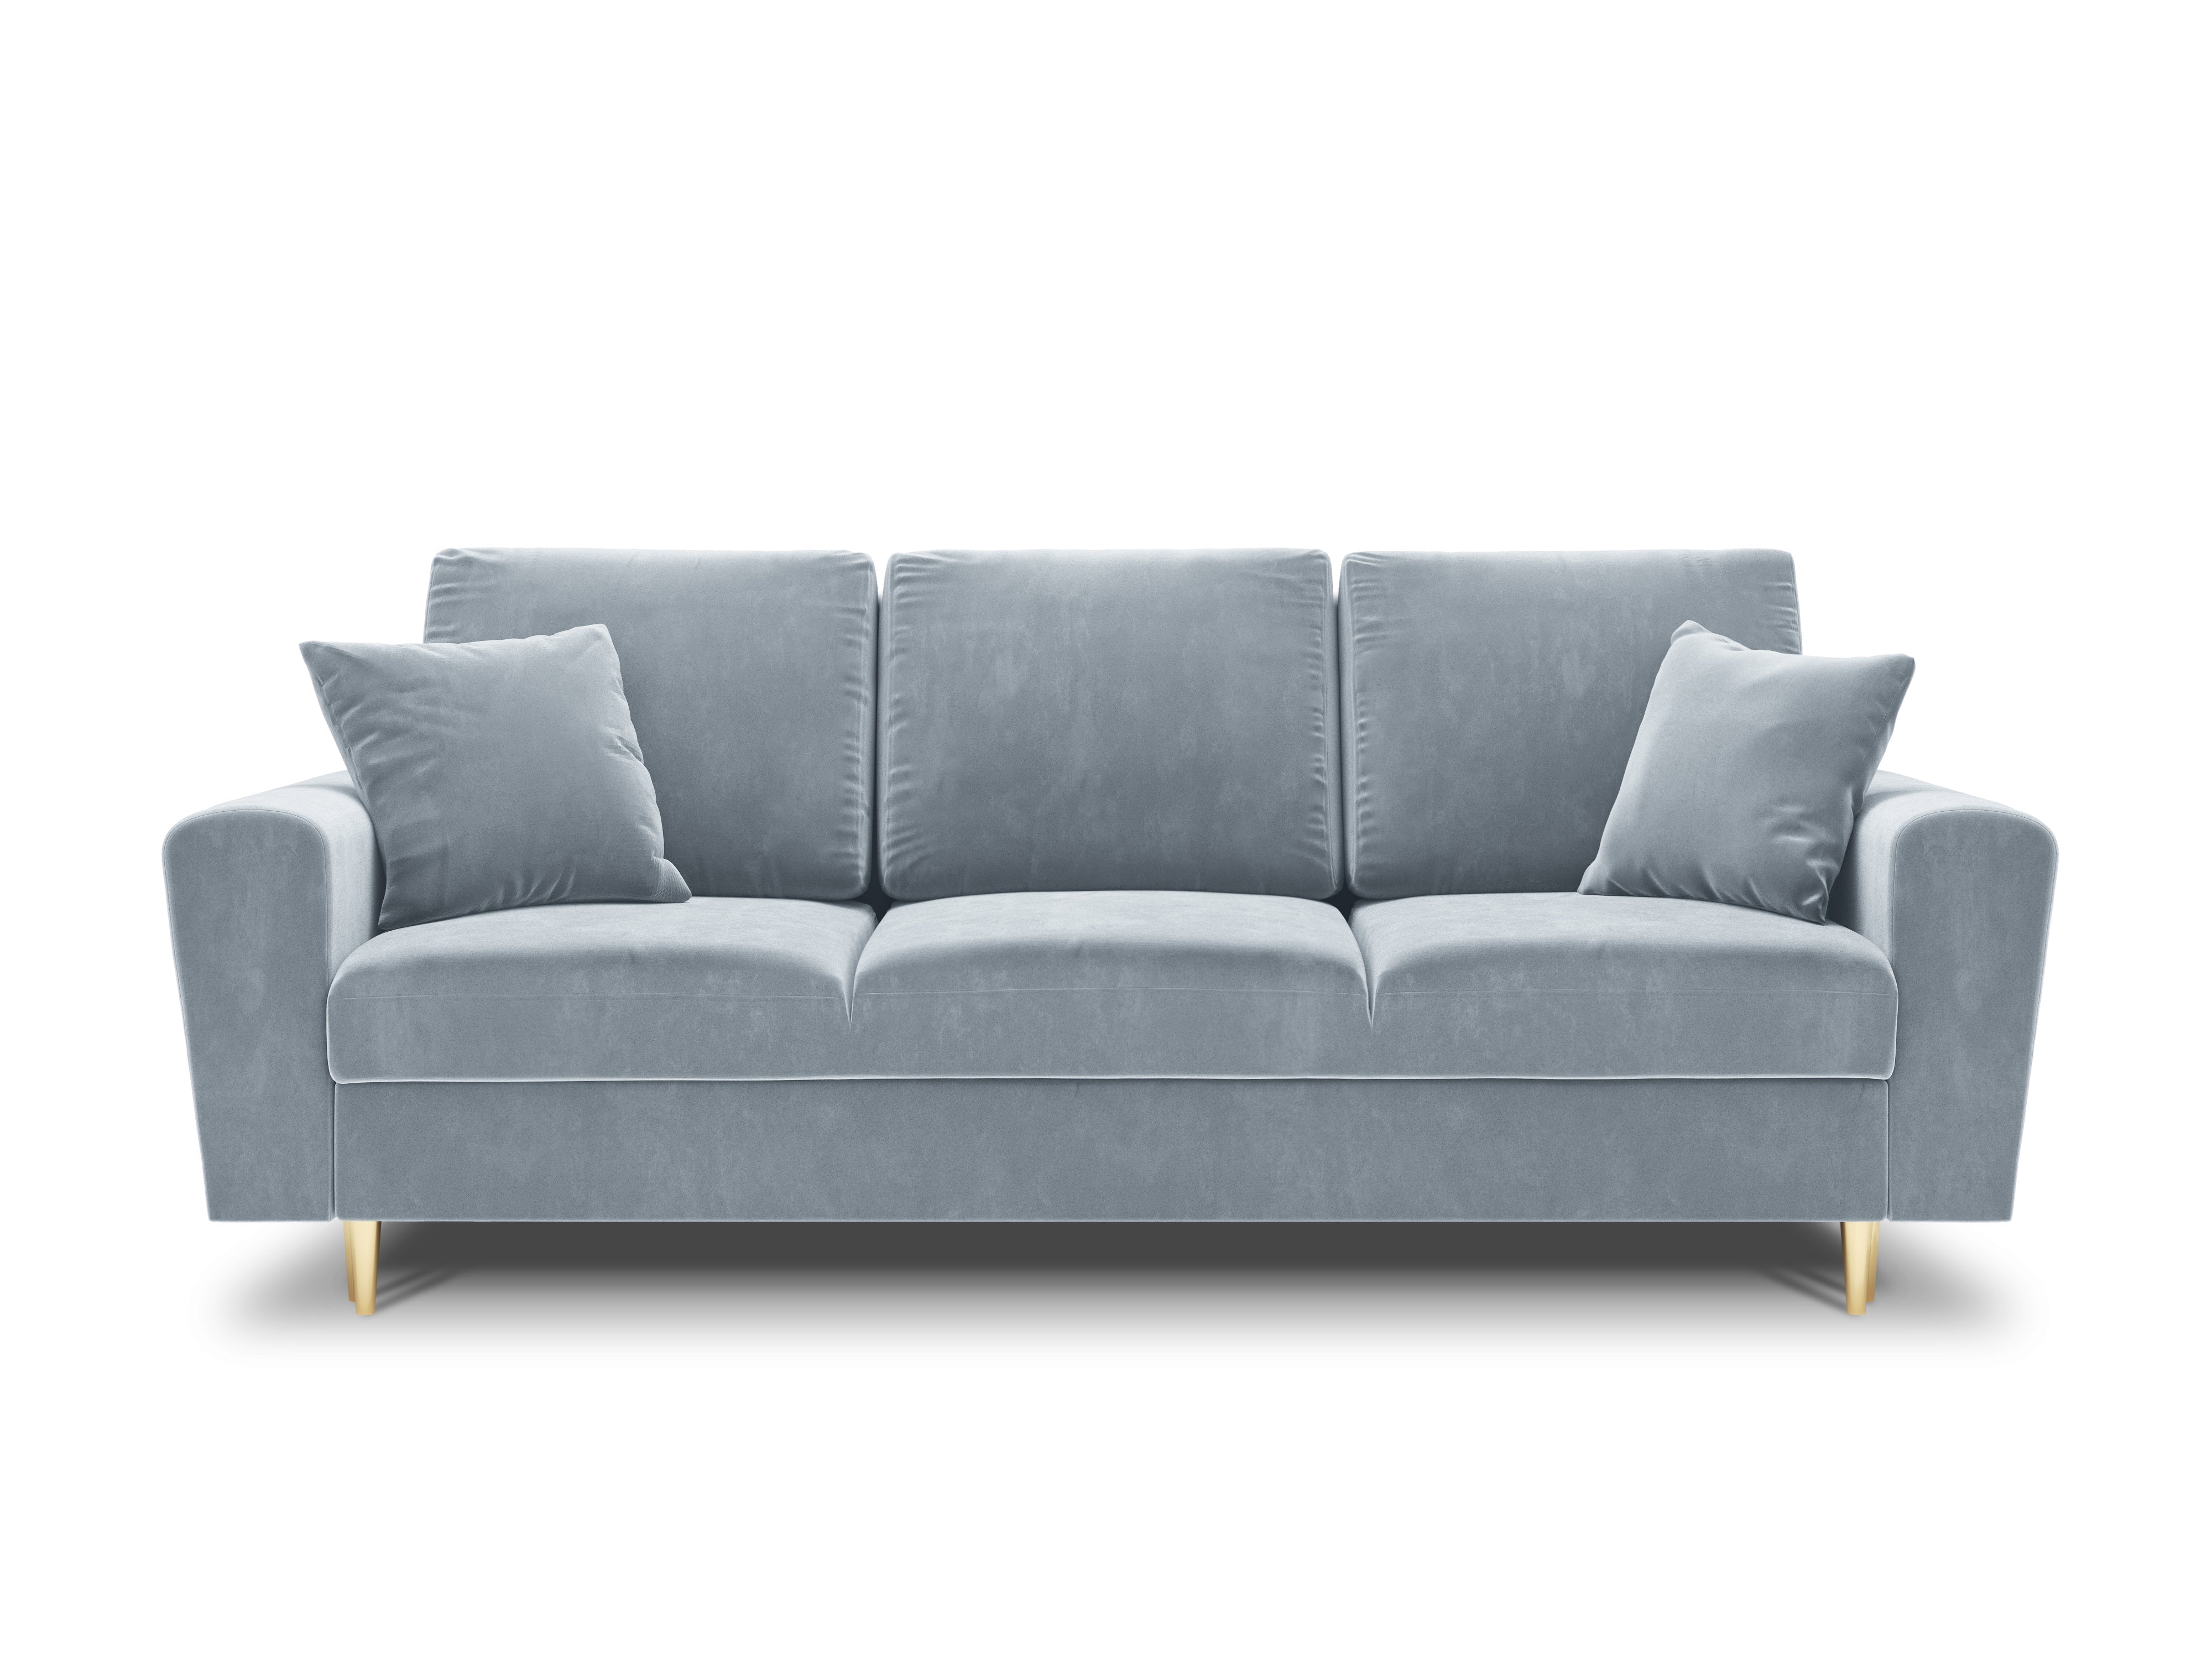 Sofa with light blue